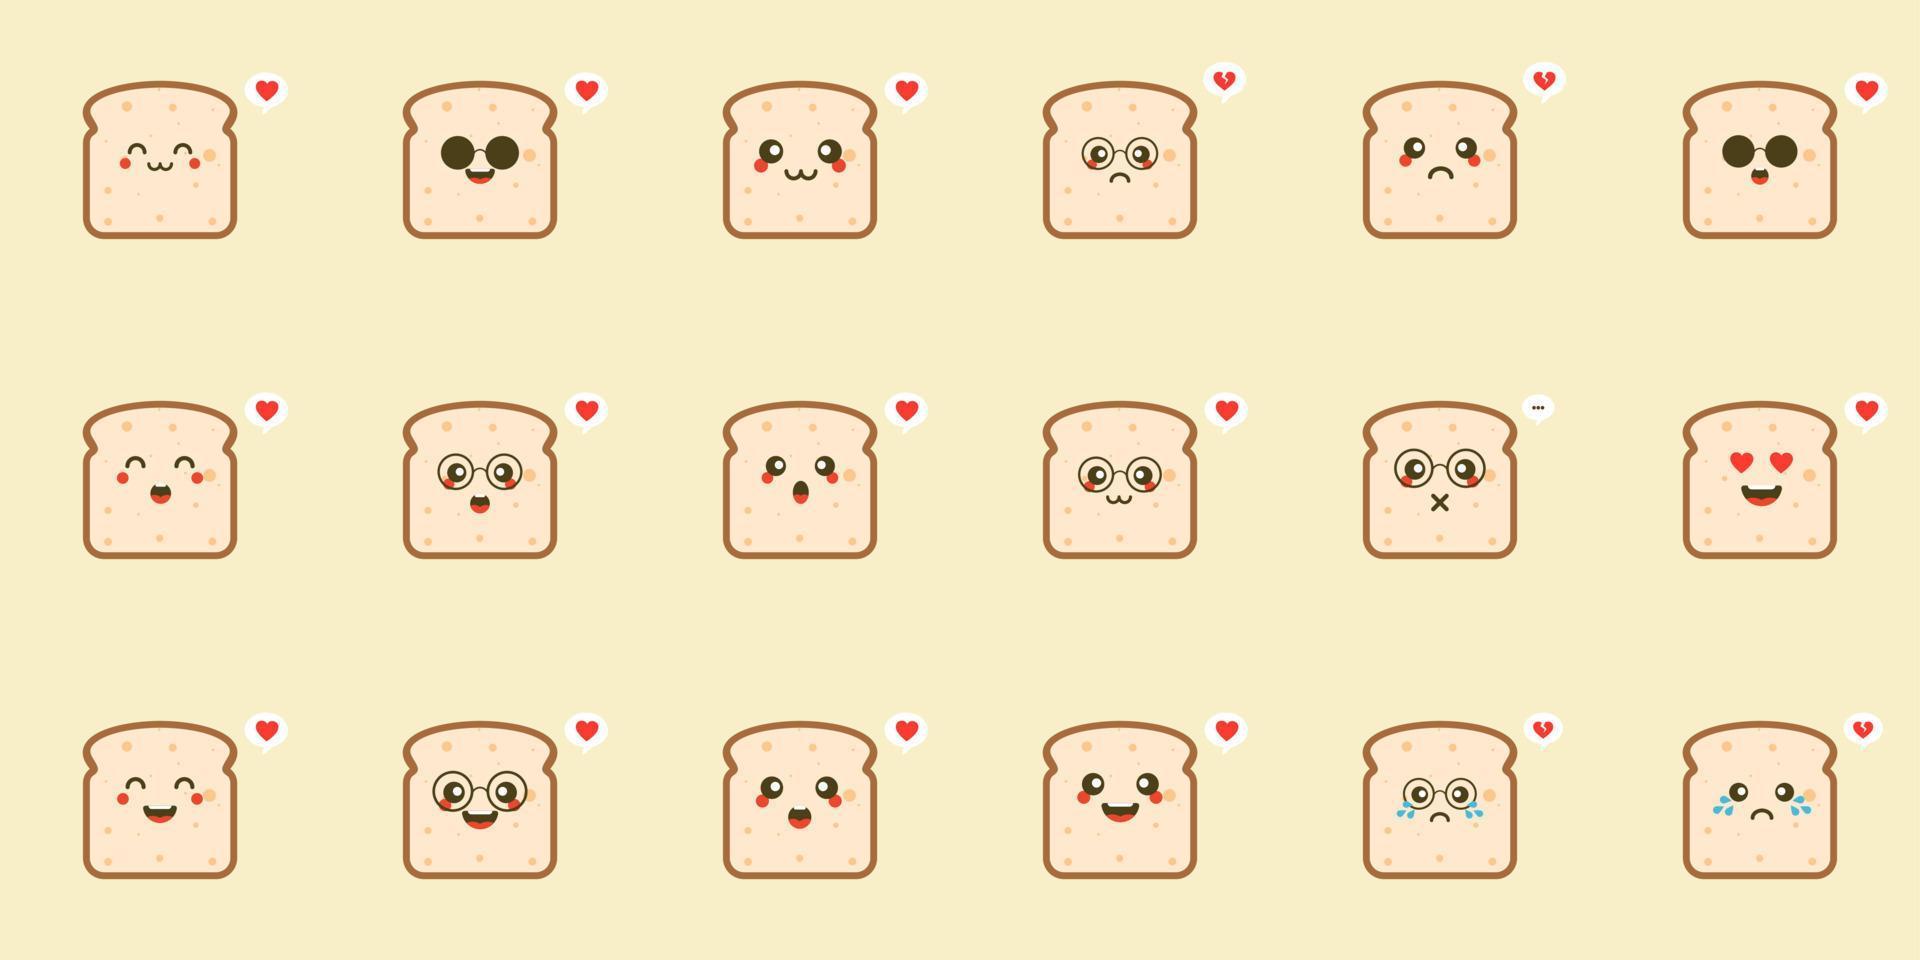 süße Cartoon-Brotscheiben mit kawaii Gesichtern. weißer und brauner Roggentoast. flache vektorartillustration des einfachen charakters. vektor